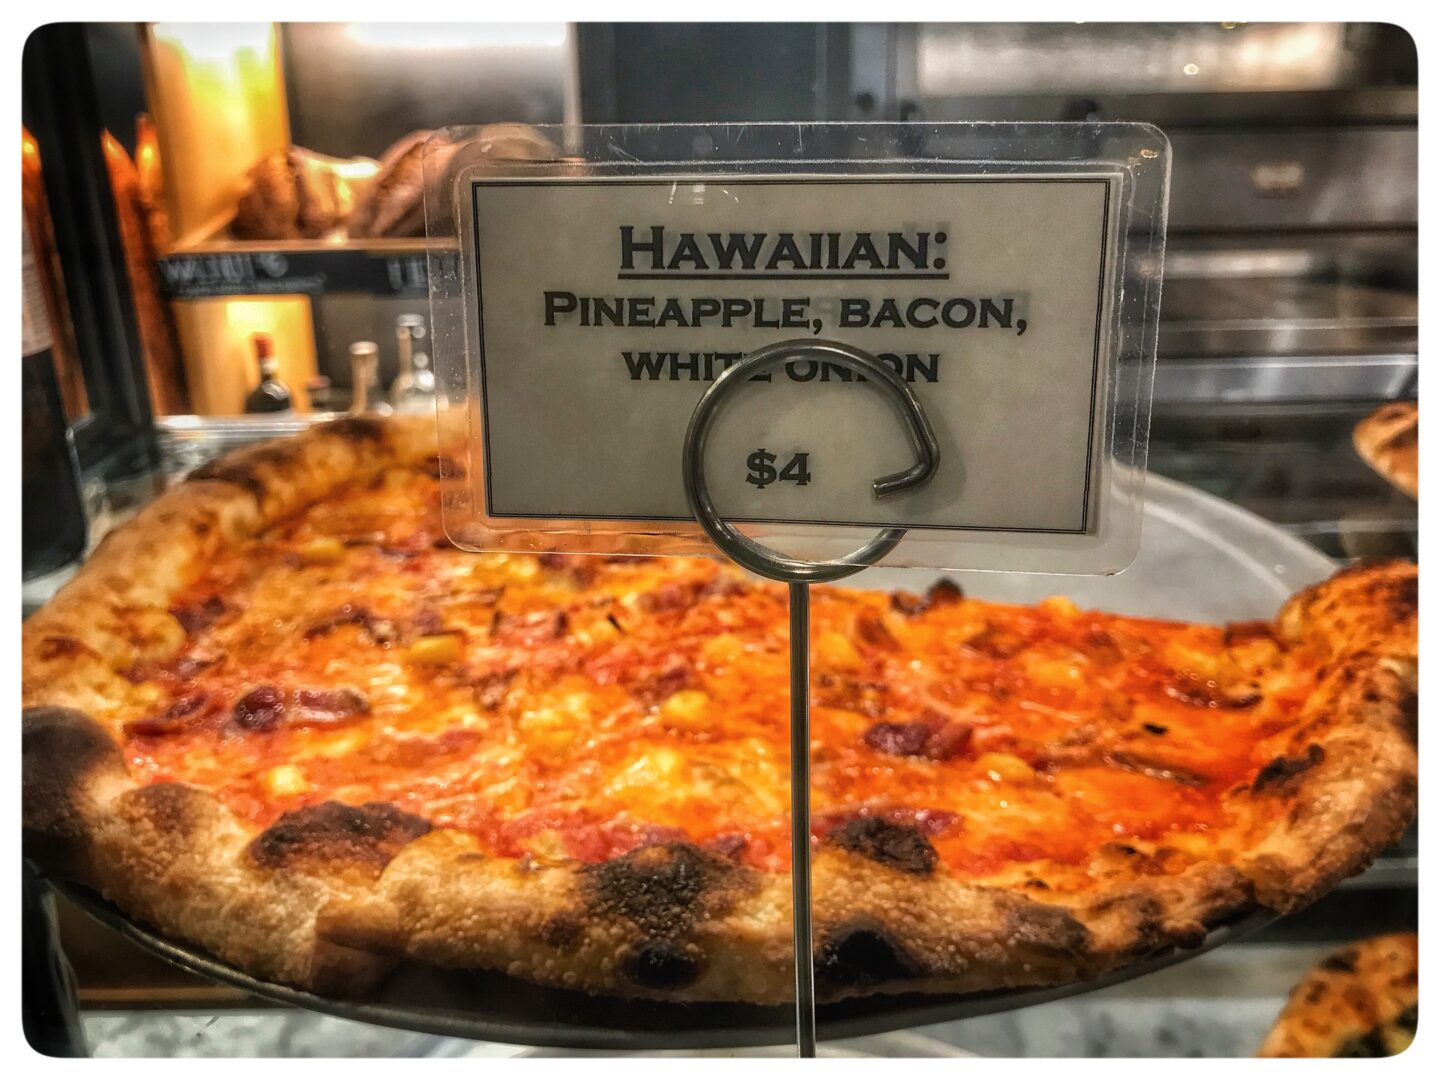 Hawaiian pineapple bacon pizza.